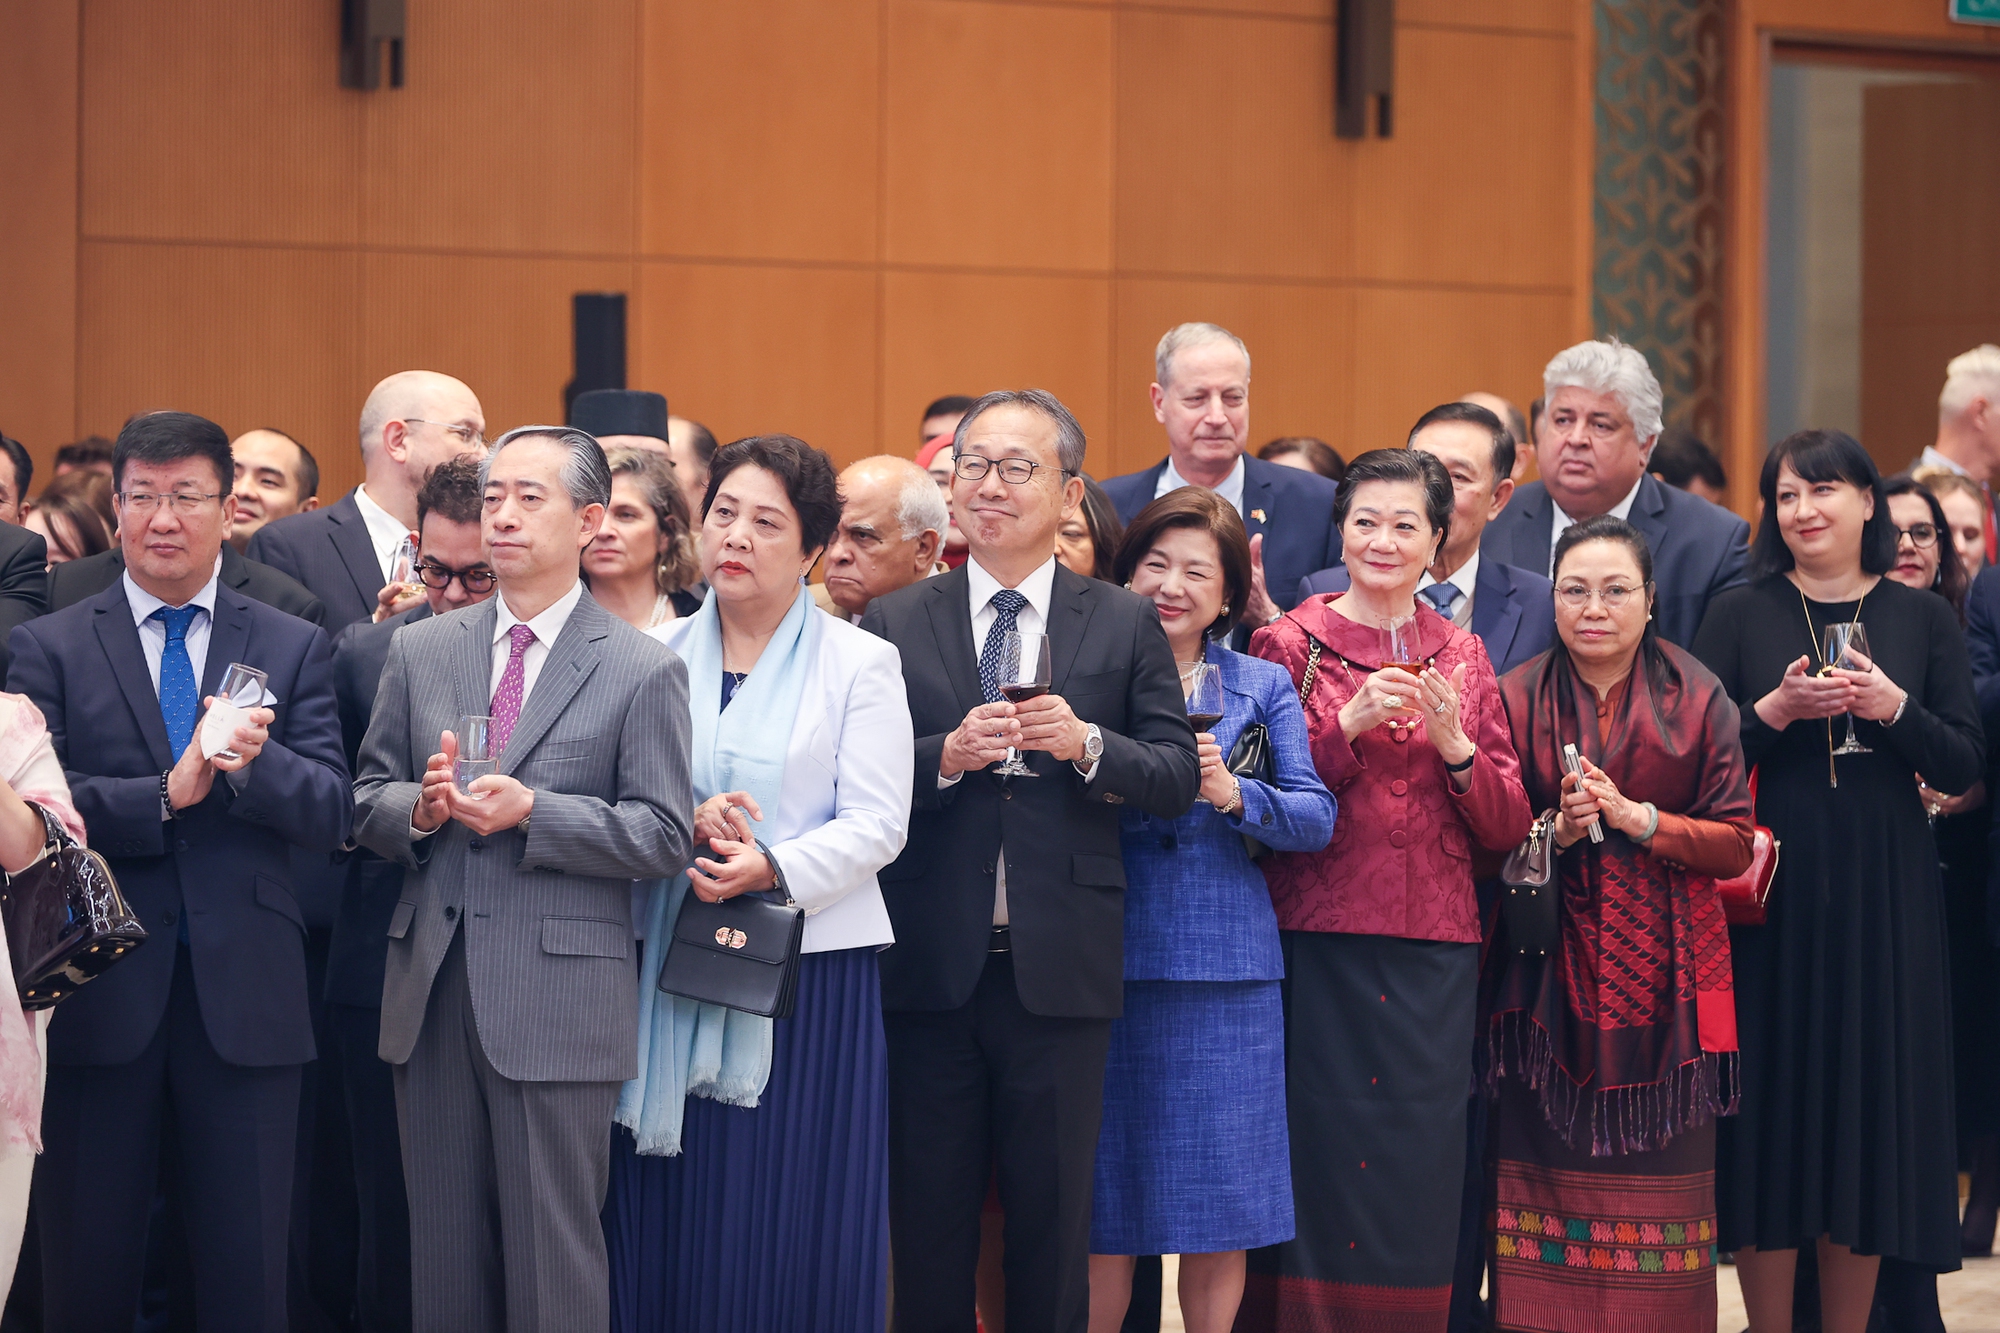 Tham dự buổi gặp mặt, chiêu đãi có đông đảo các Đại sứ, Đại biện, Trưởng đại diện các tổ chức quốc tế tại Hà Nội cùng Phu nhân, Phu quân - Ảnh: VGP/Nhật Bắc